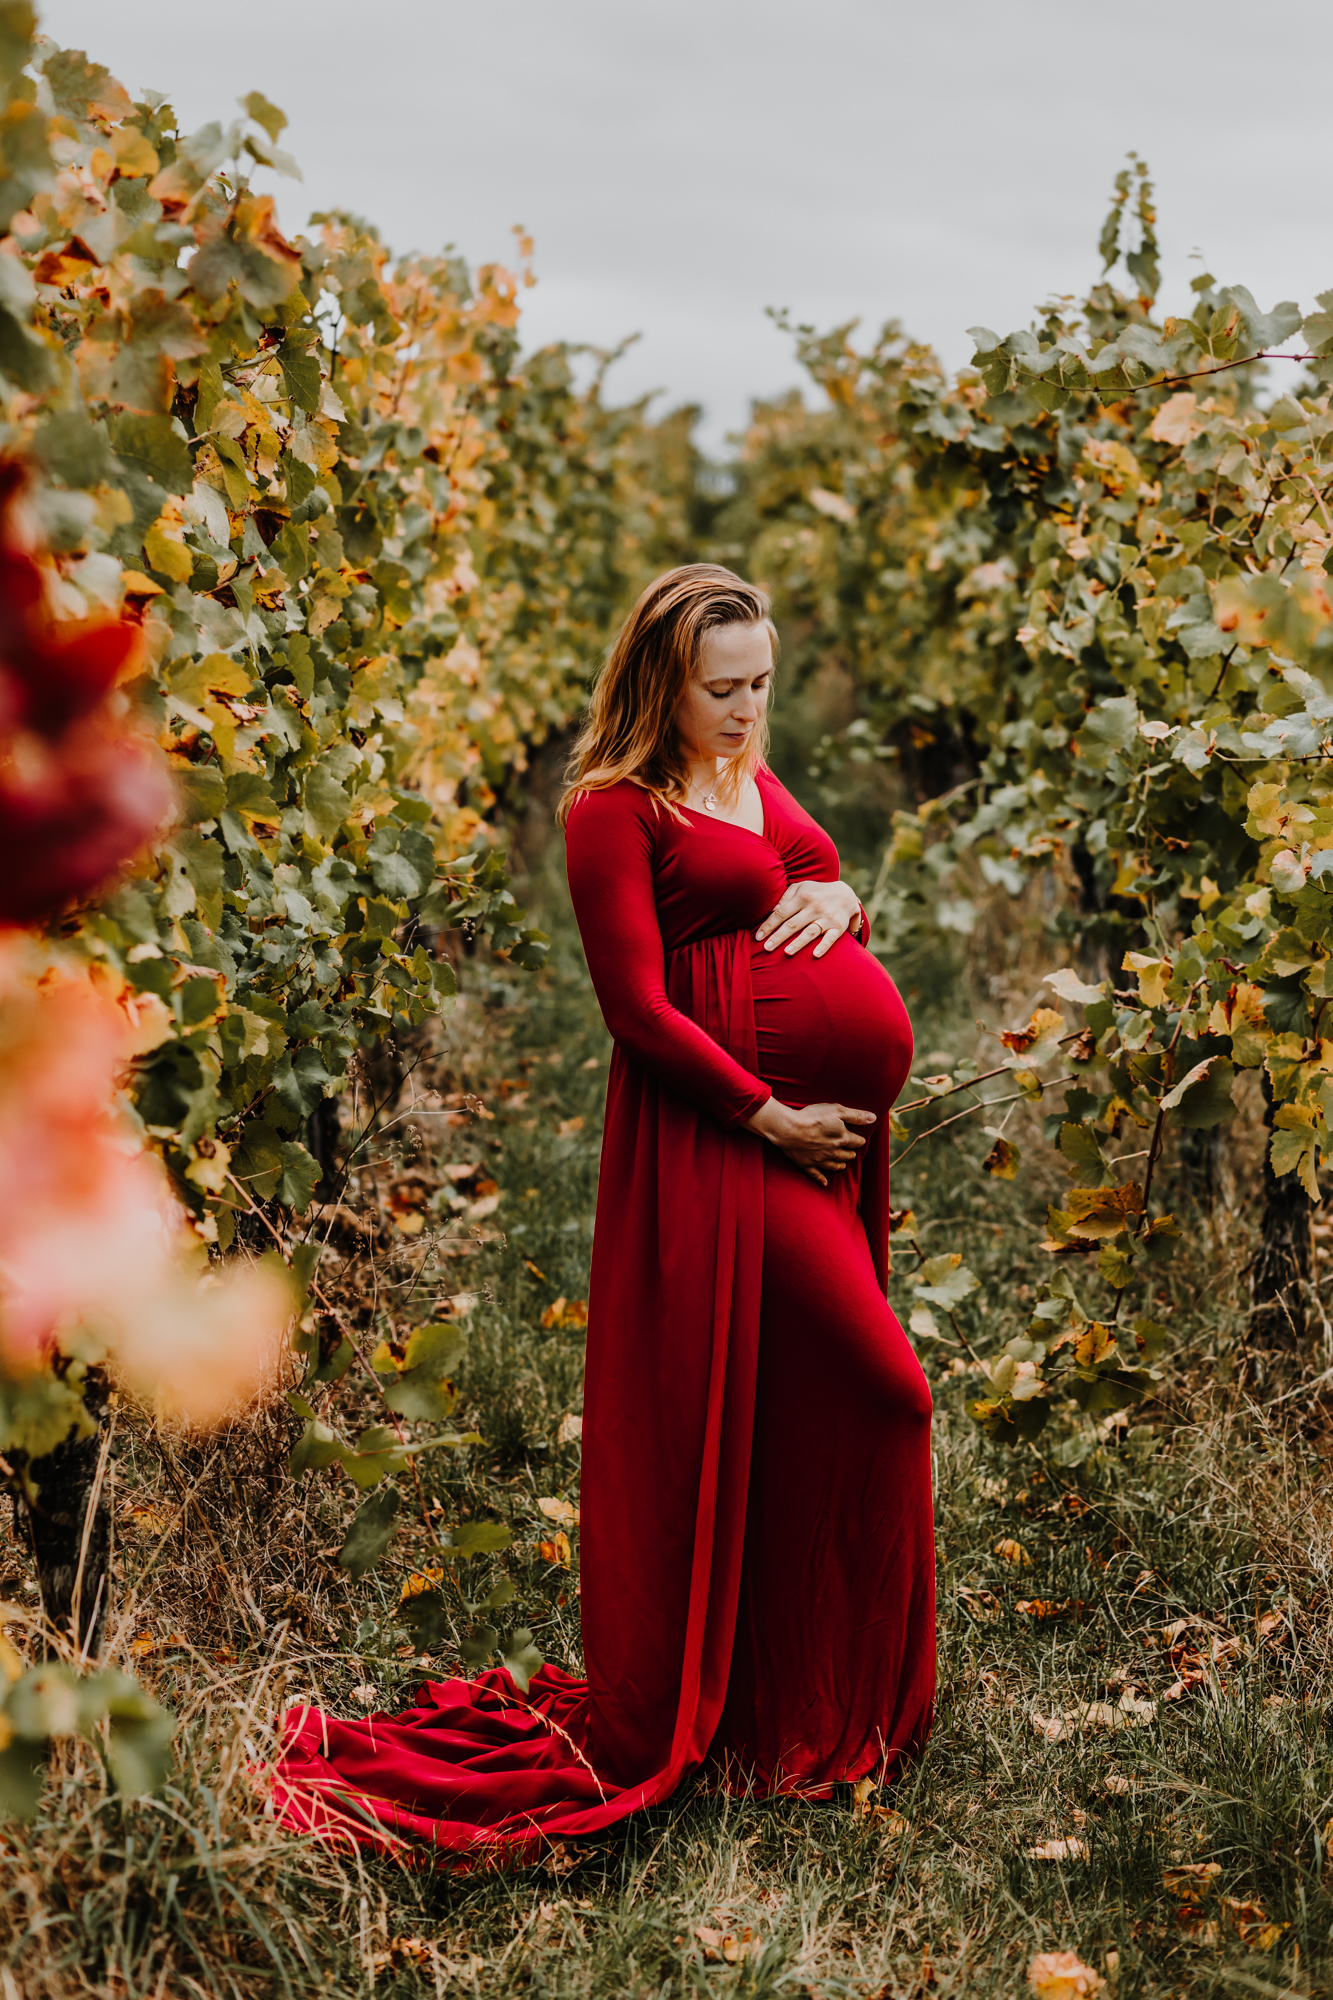 femme enceinte dans une robe rouge au milieu des vignes en automne